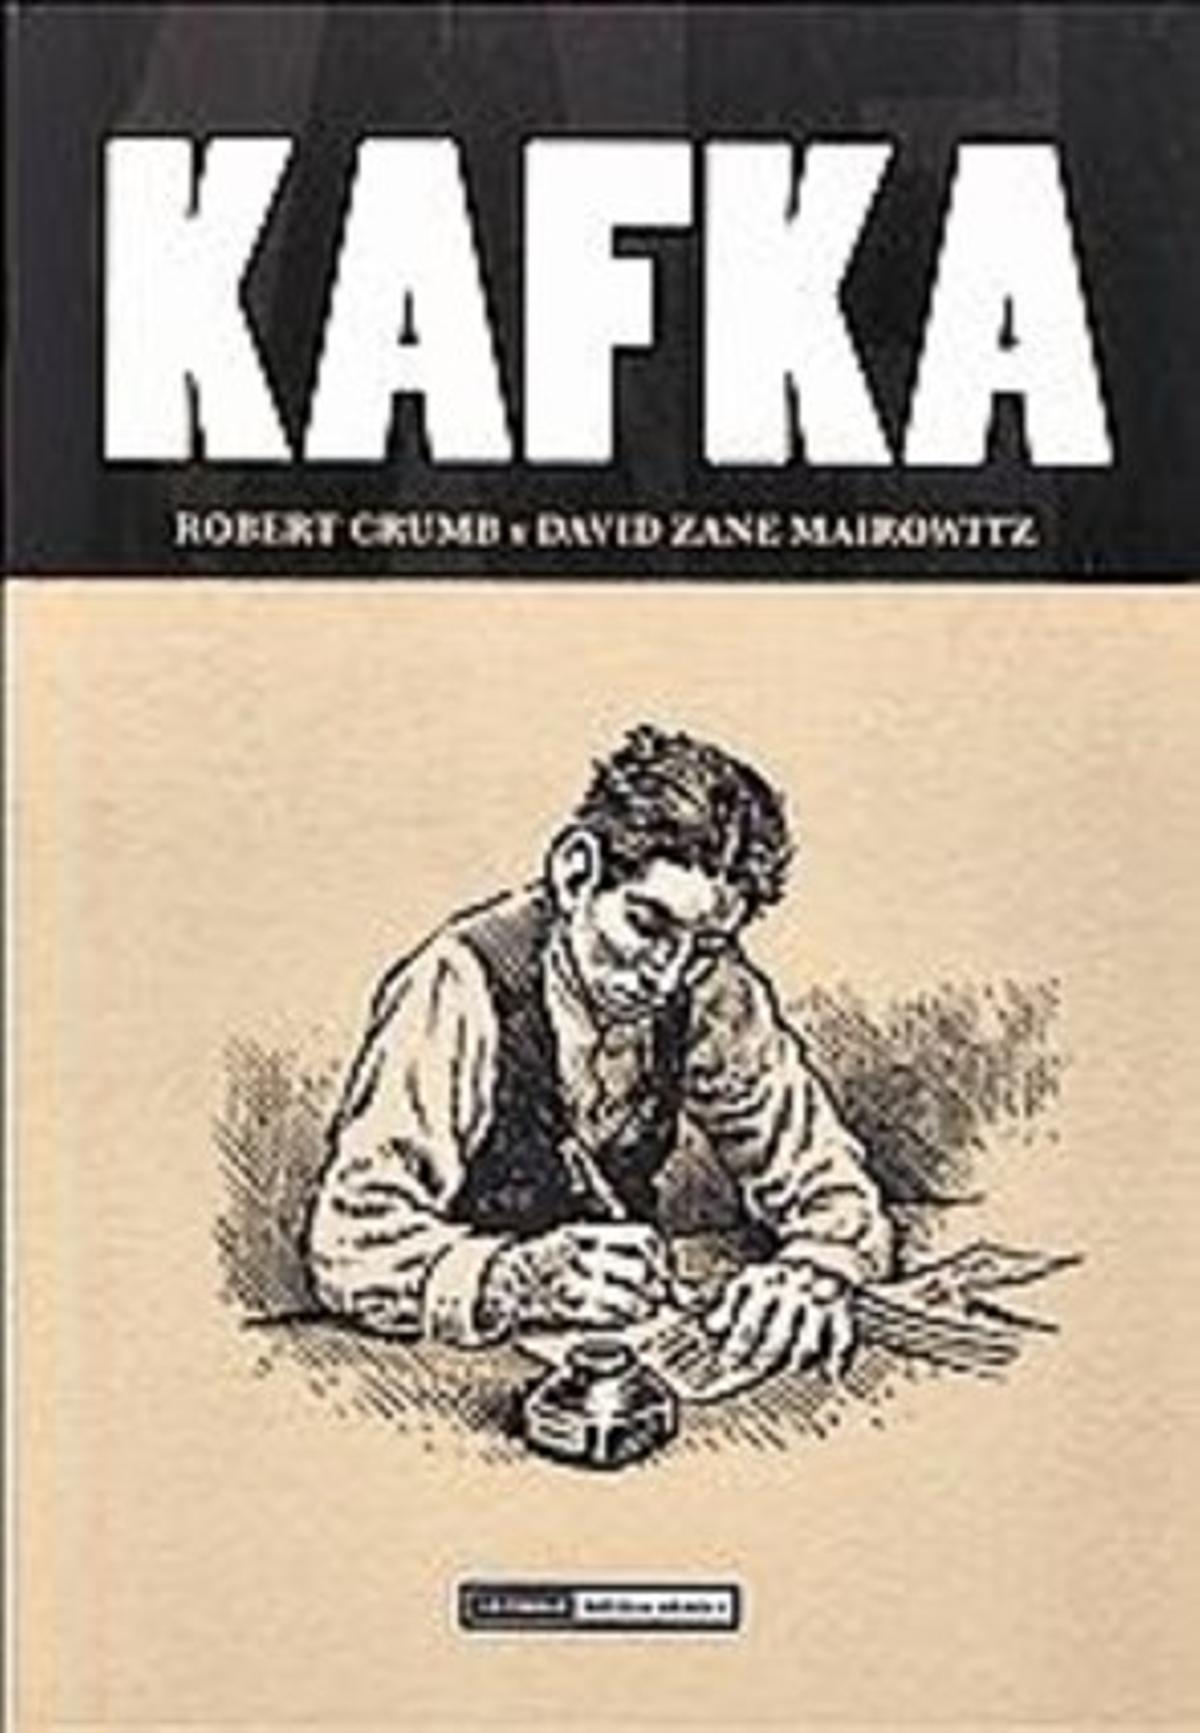 La oscura interpretación de Kafka por Robert Crumb llega a España